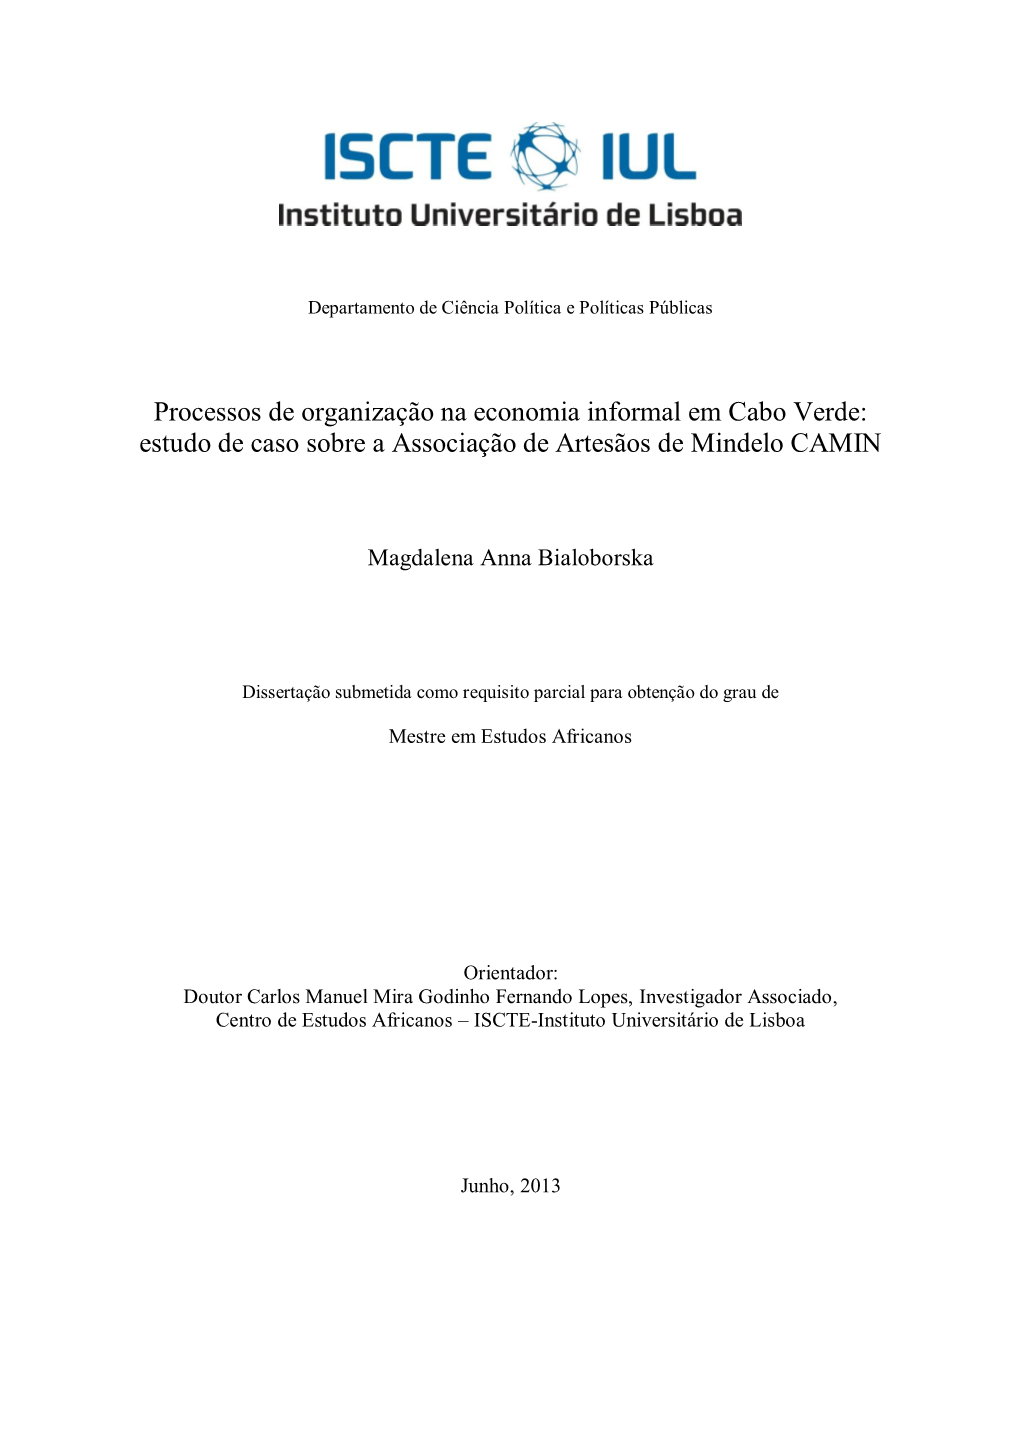 Processos De Organização Na Economia Informal Em Cabo Verde: Estudo De Caso Sobre a Associação De Artesãos De Mindelo CAMIN